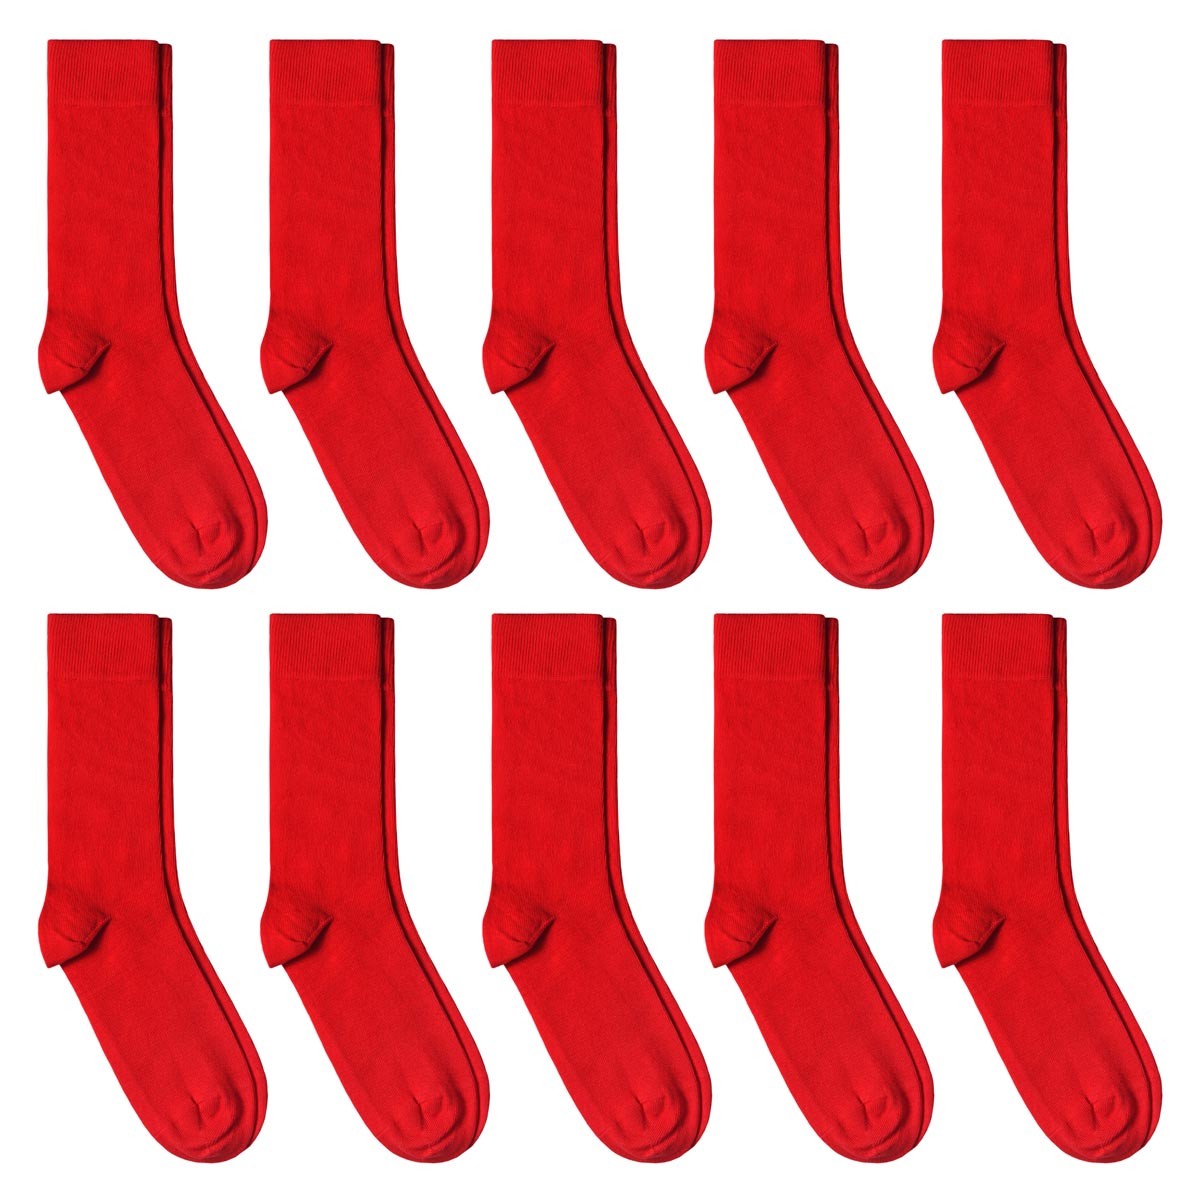 CH-00611_A12-1--_Lot-10-paires-de-chaussettes-homme-rouges-unies